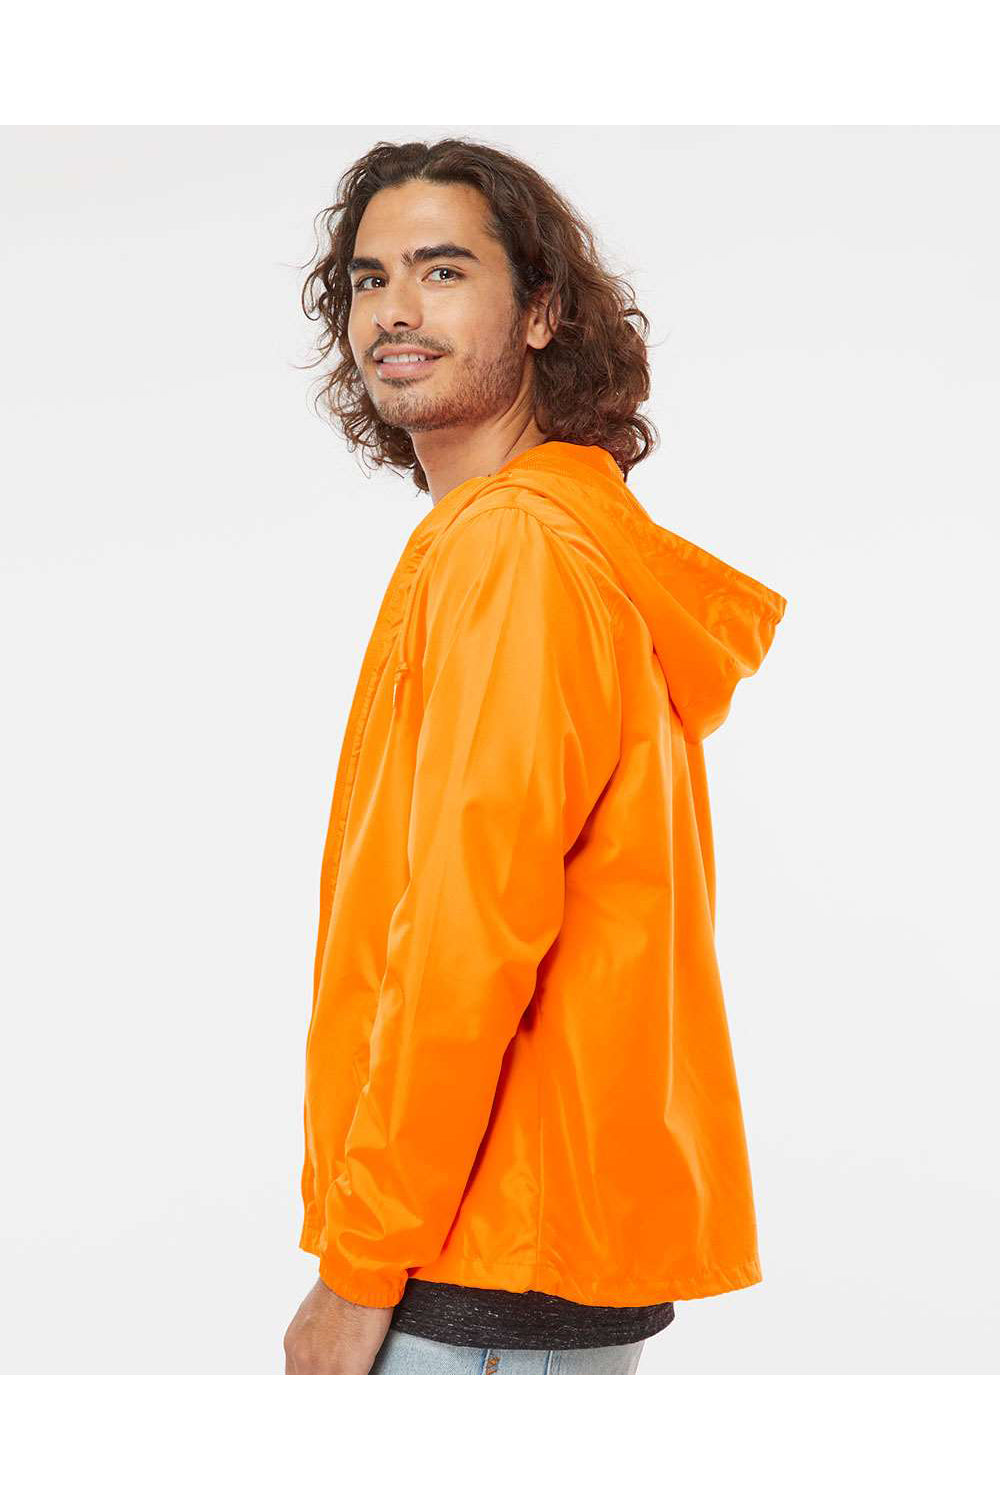 Independent Trading Co. EXP54LWZ Mens Full Zip Windbreaker Hooded Jacket Safety Orange Model Side